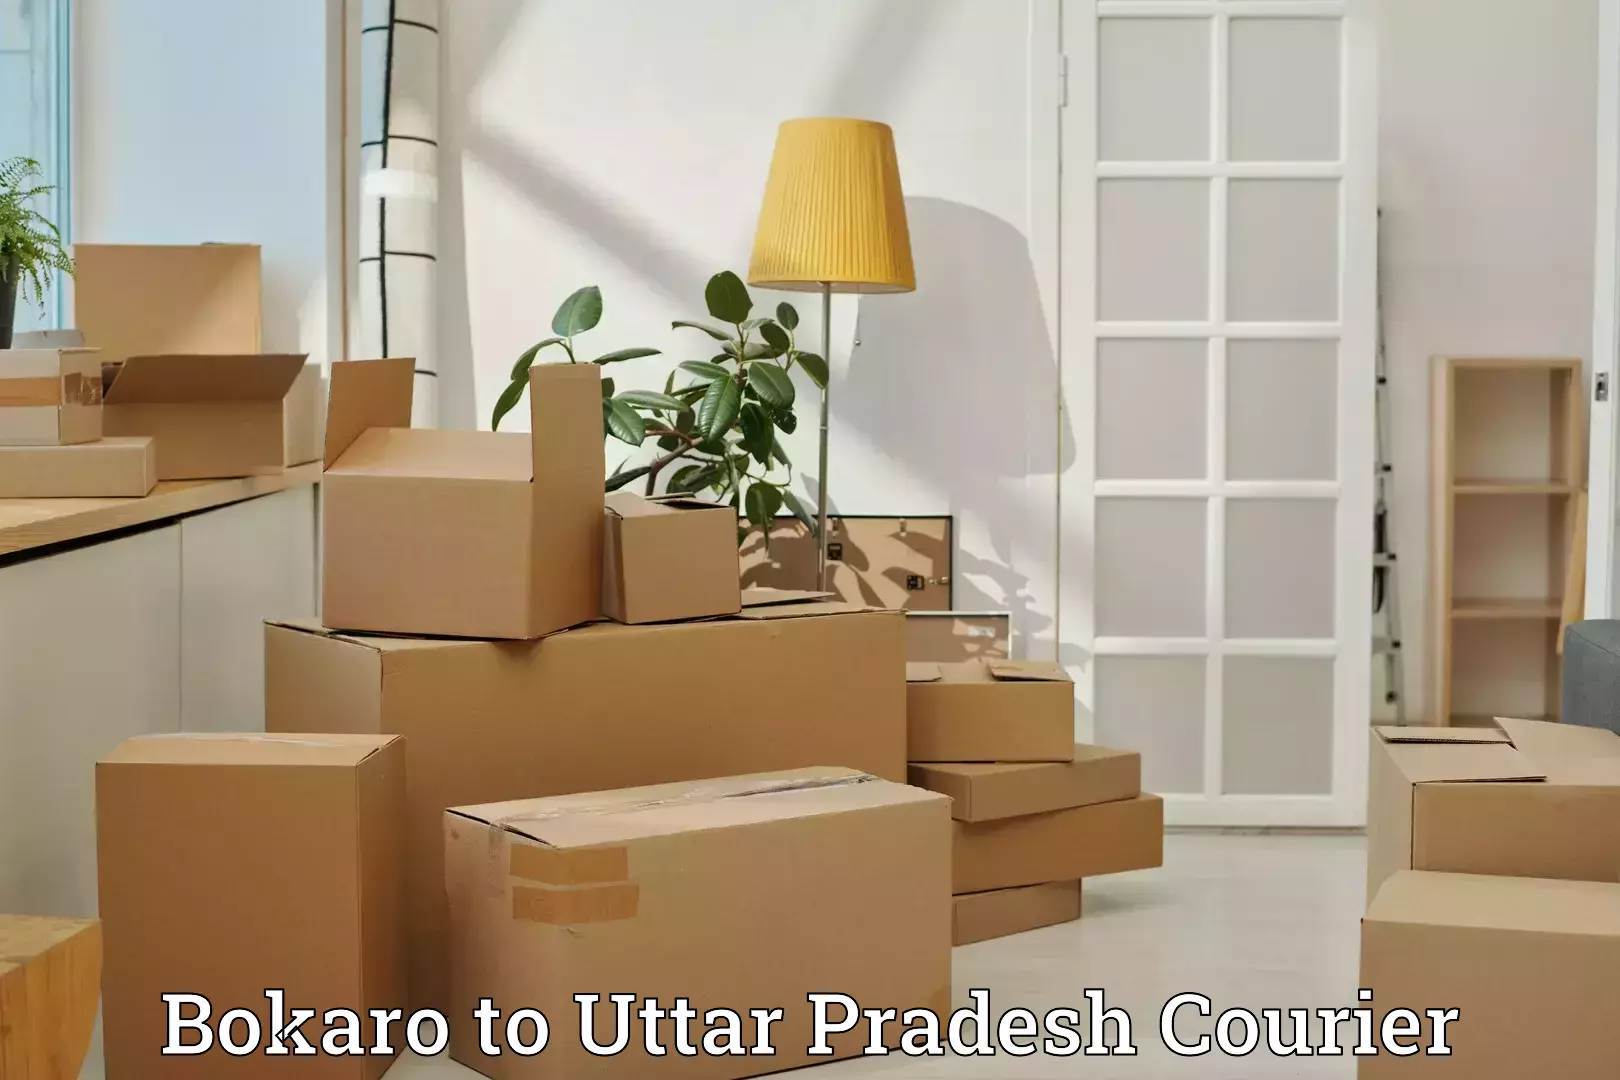 Luggage shipment tracking Bokaro to Varanasi